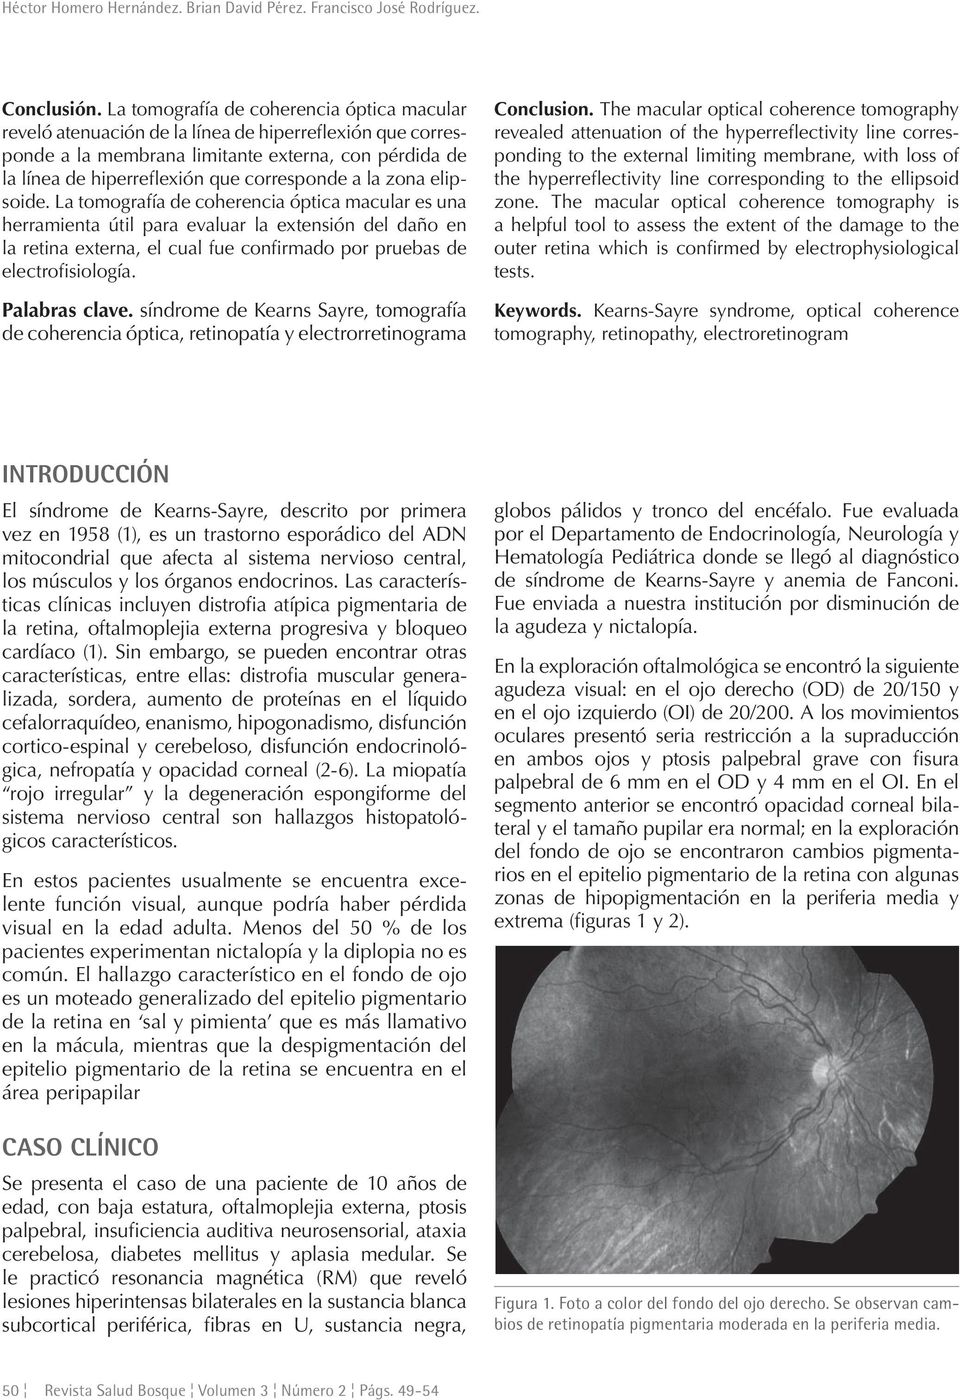 la zona elipsoide. La tomografía de coherencia óptica macular es una herramienta útil para evaluar la extensión del daño en la retina externa, el cual fue confirmado por pruebas de electrofisiología.